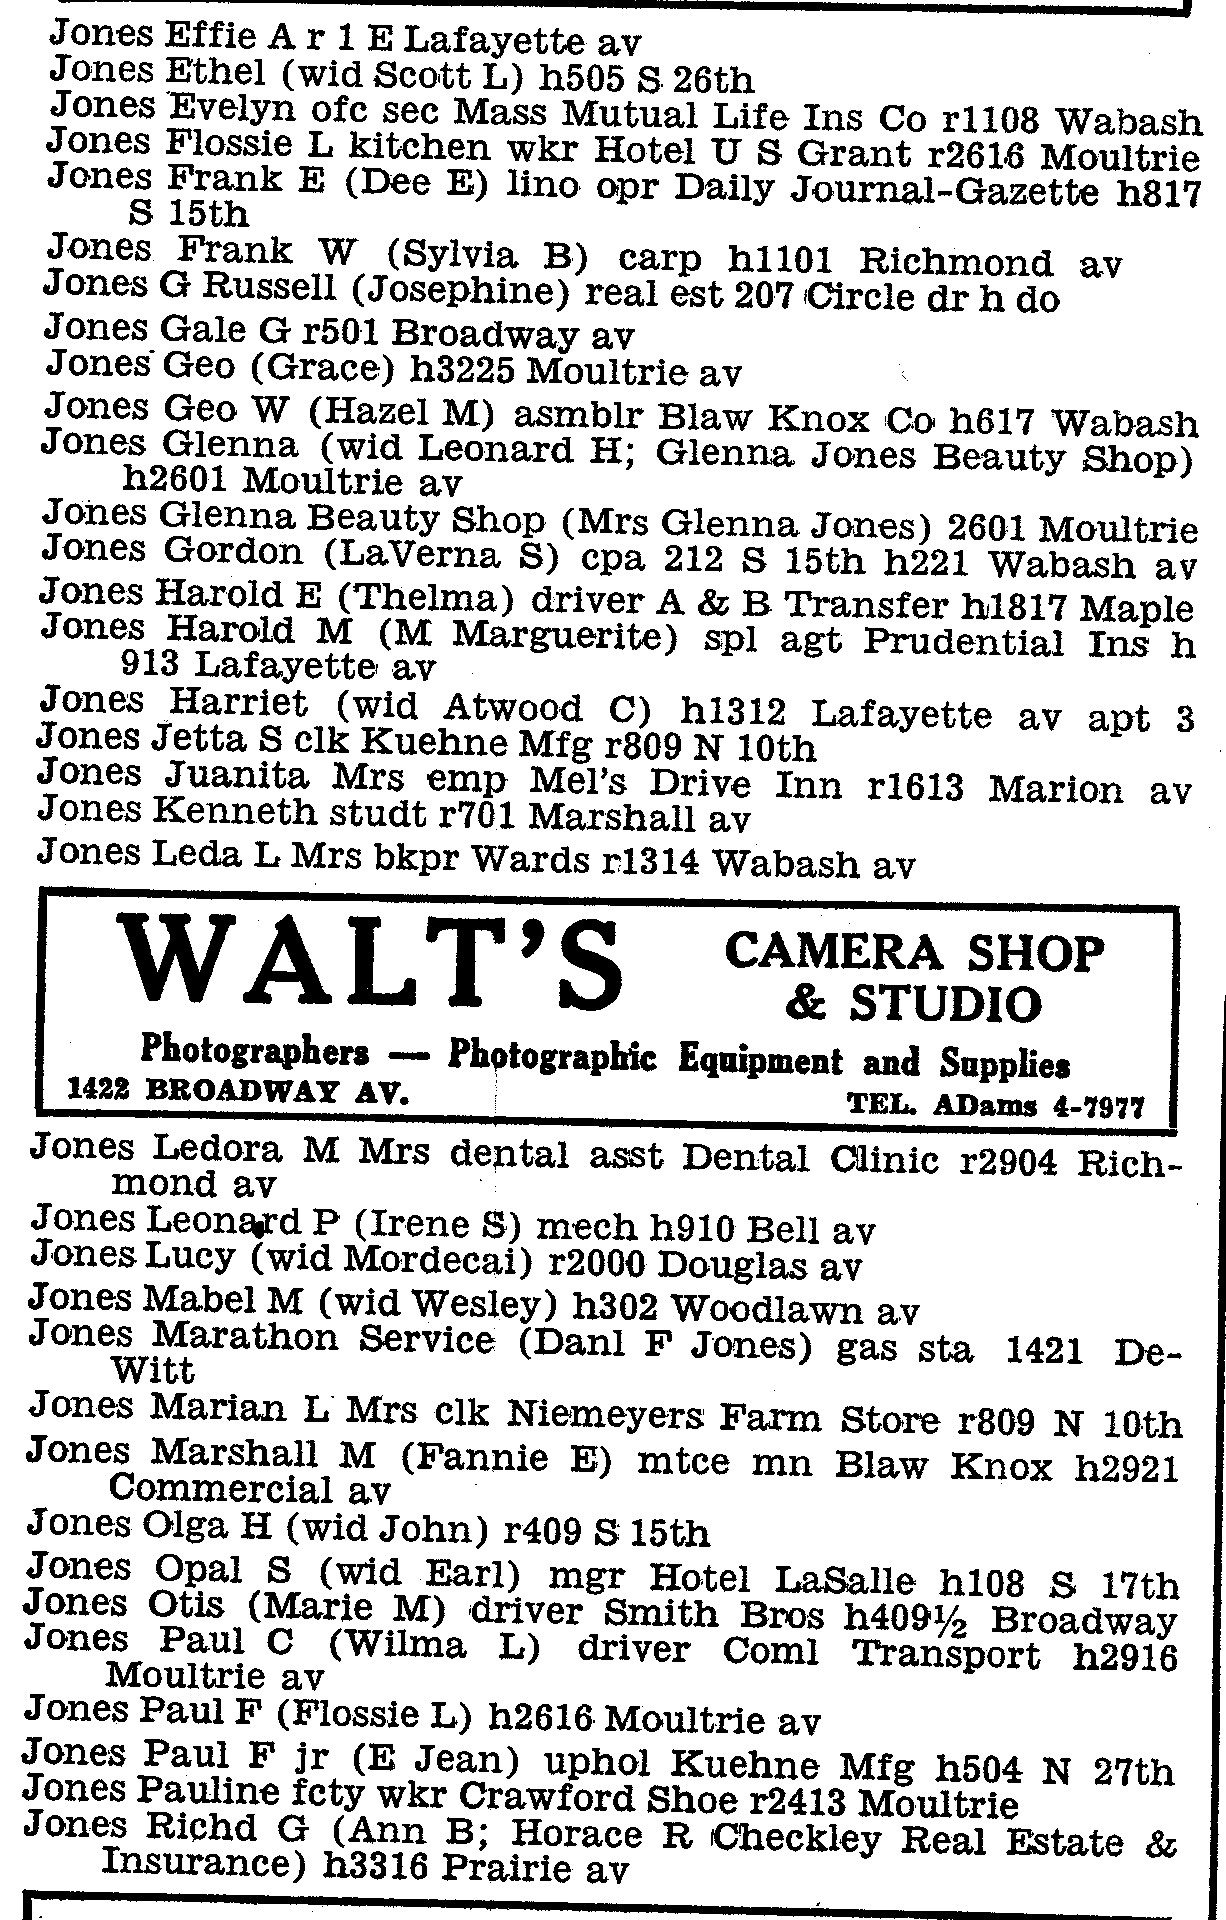 charleston directory 1960 p2